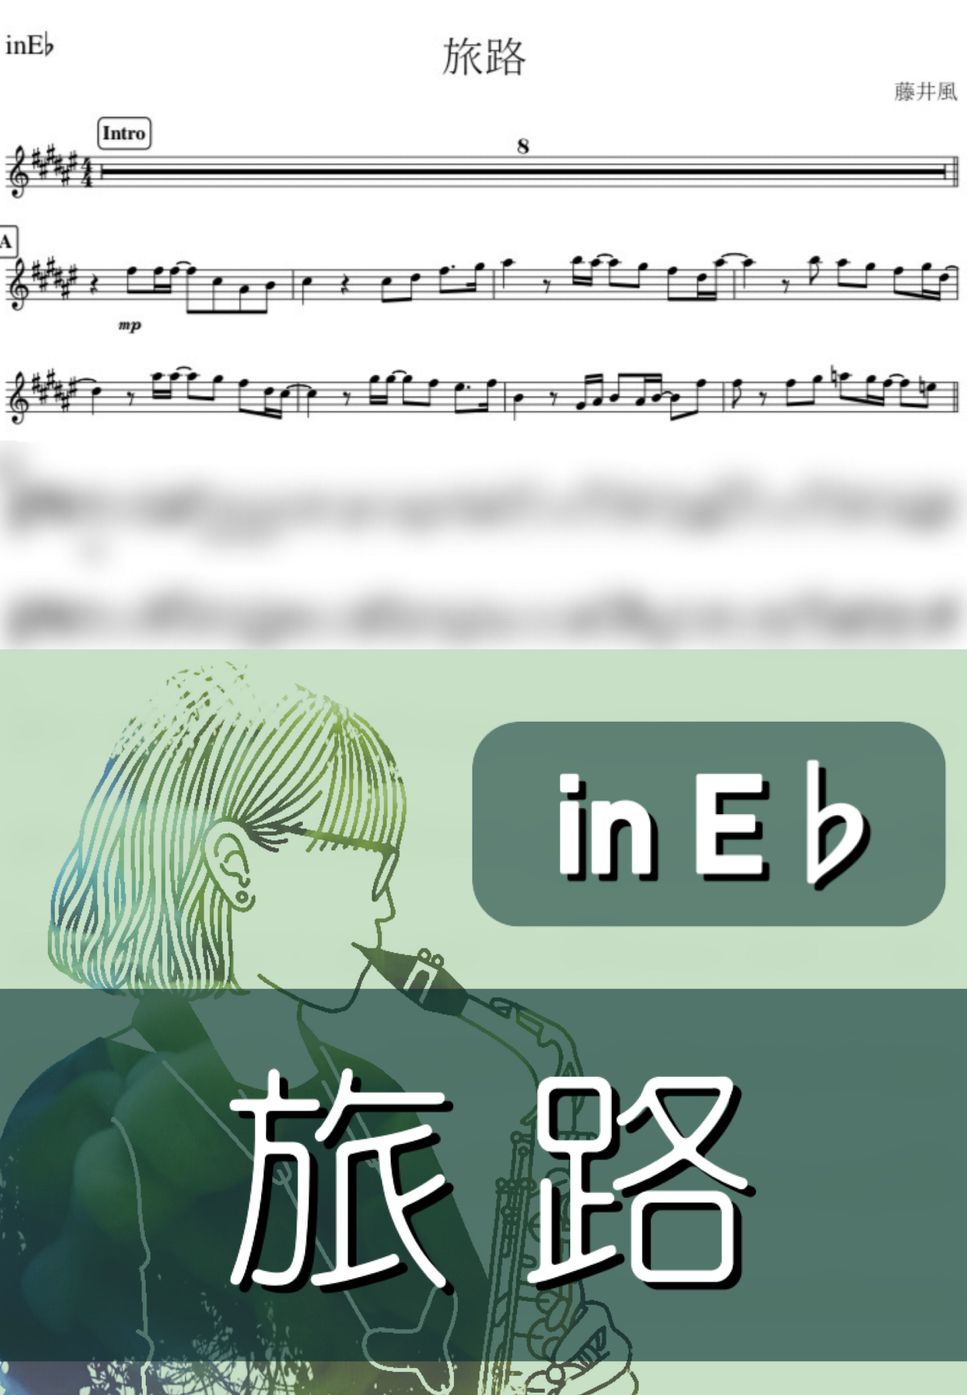 藤井風 - 旅路 (E♭) by kanamusic